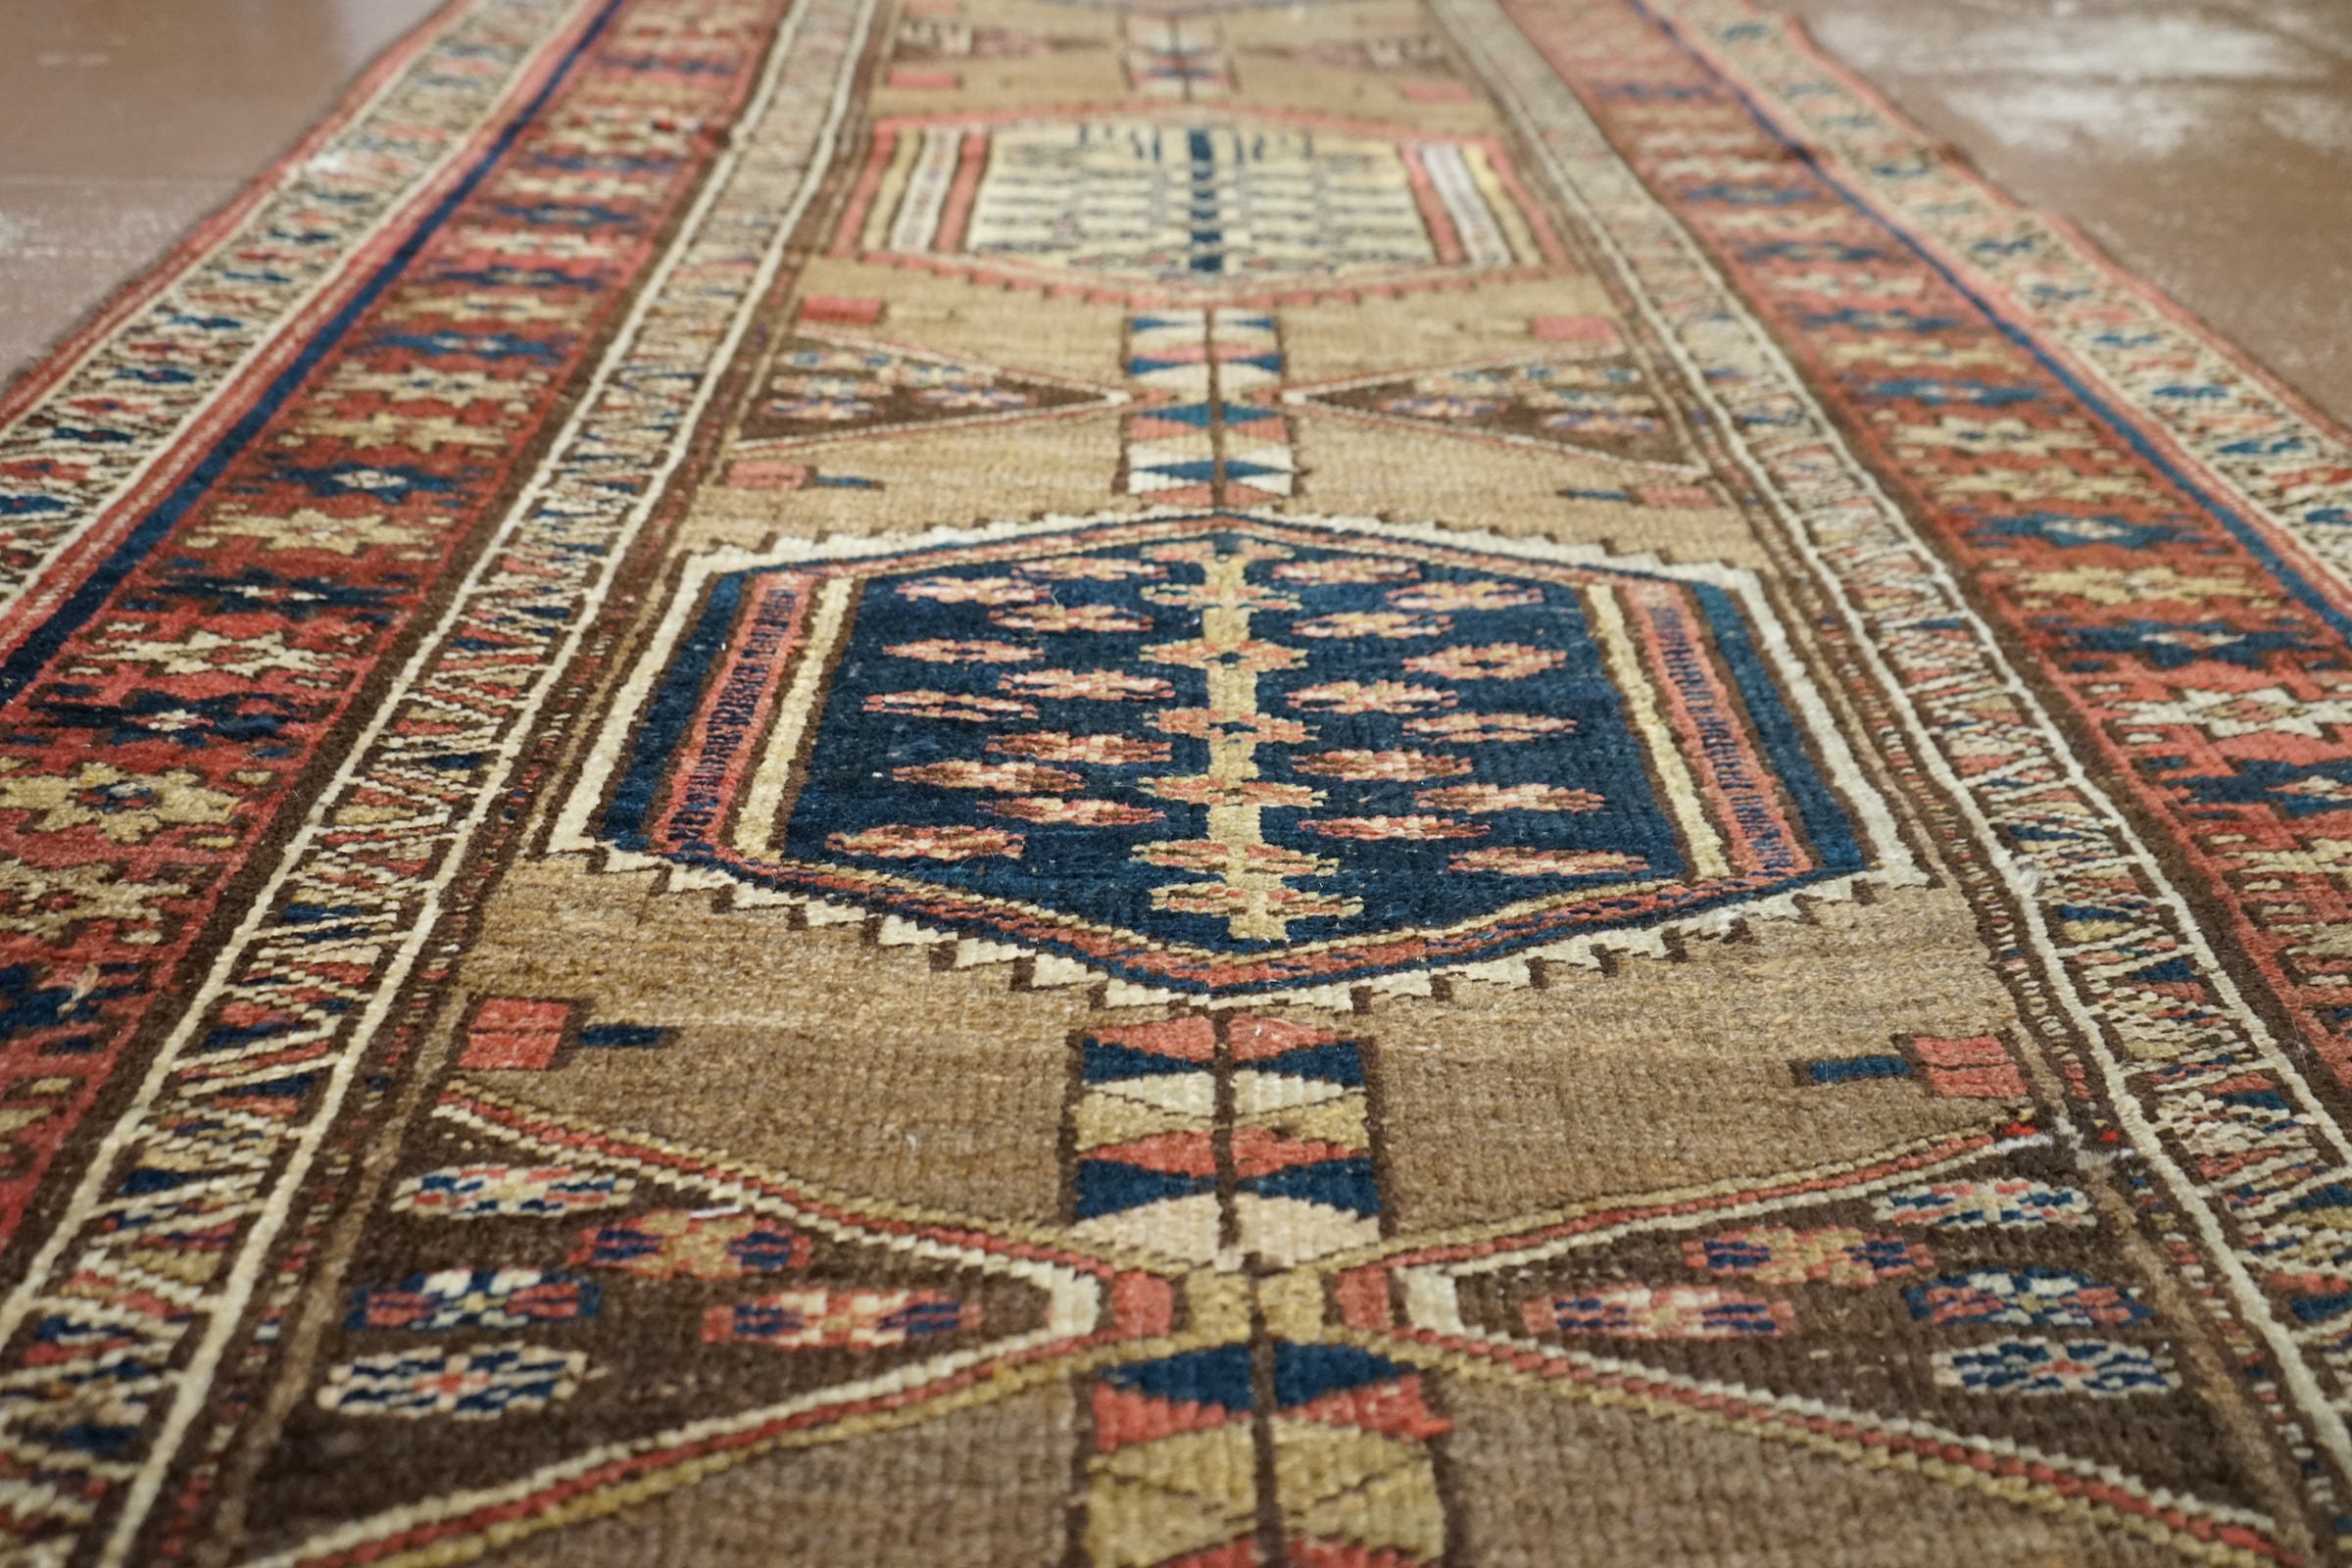 Traditional rug laid flat on floor